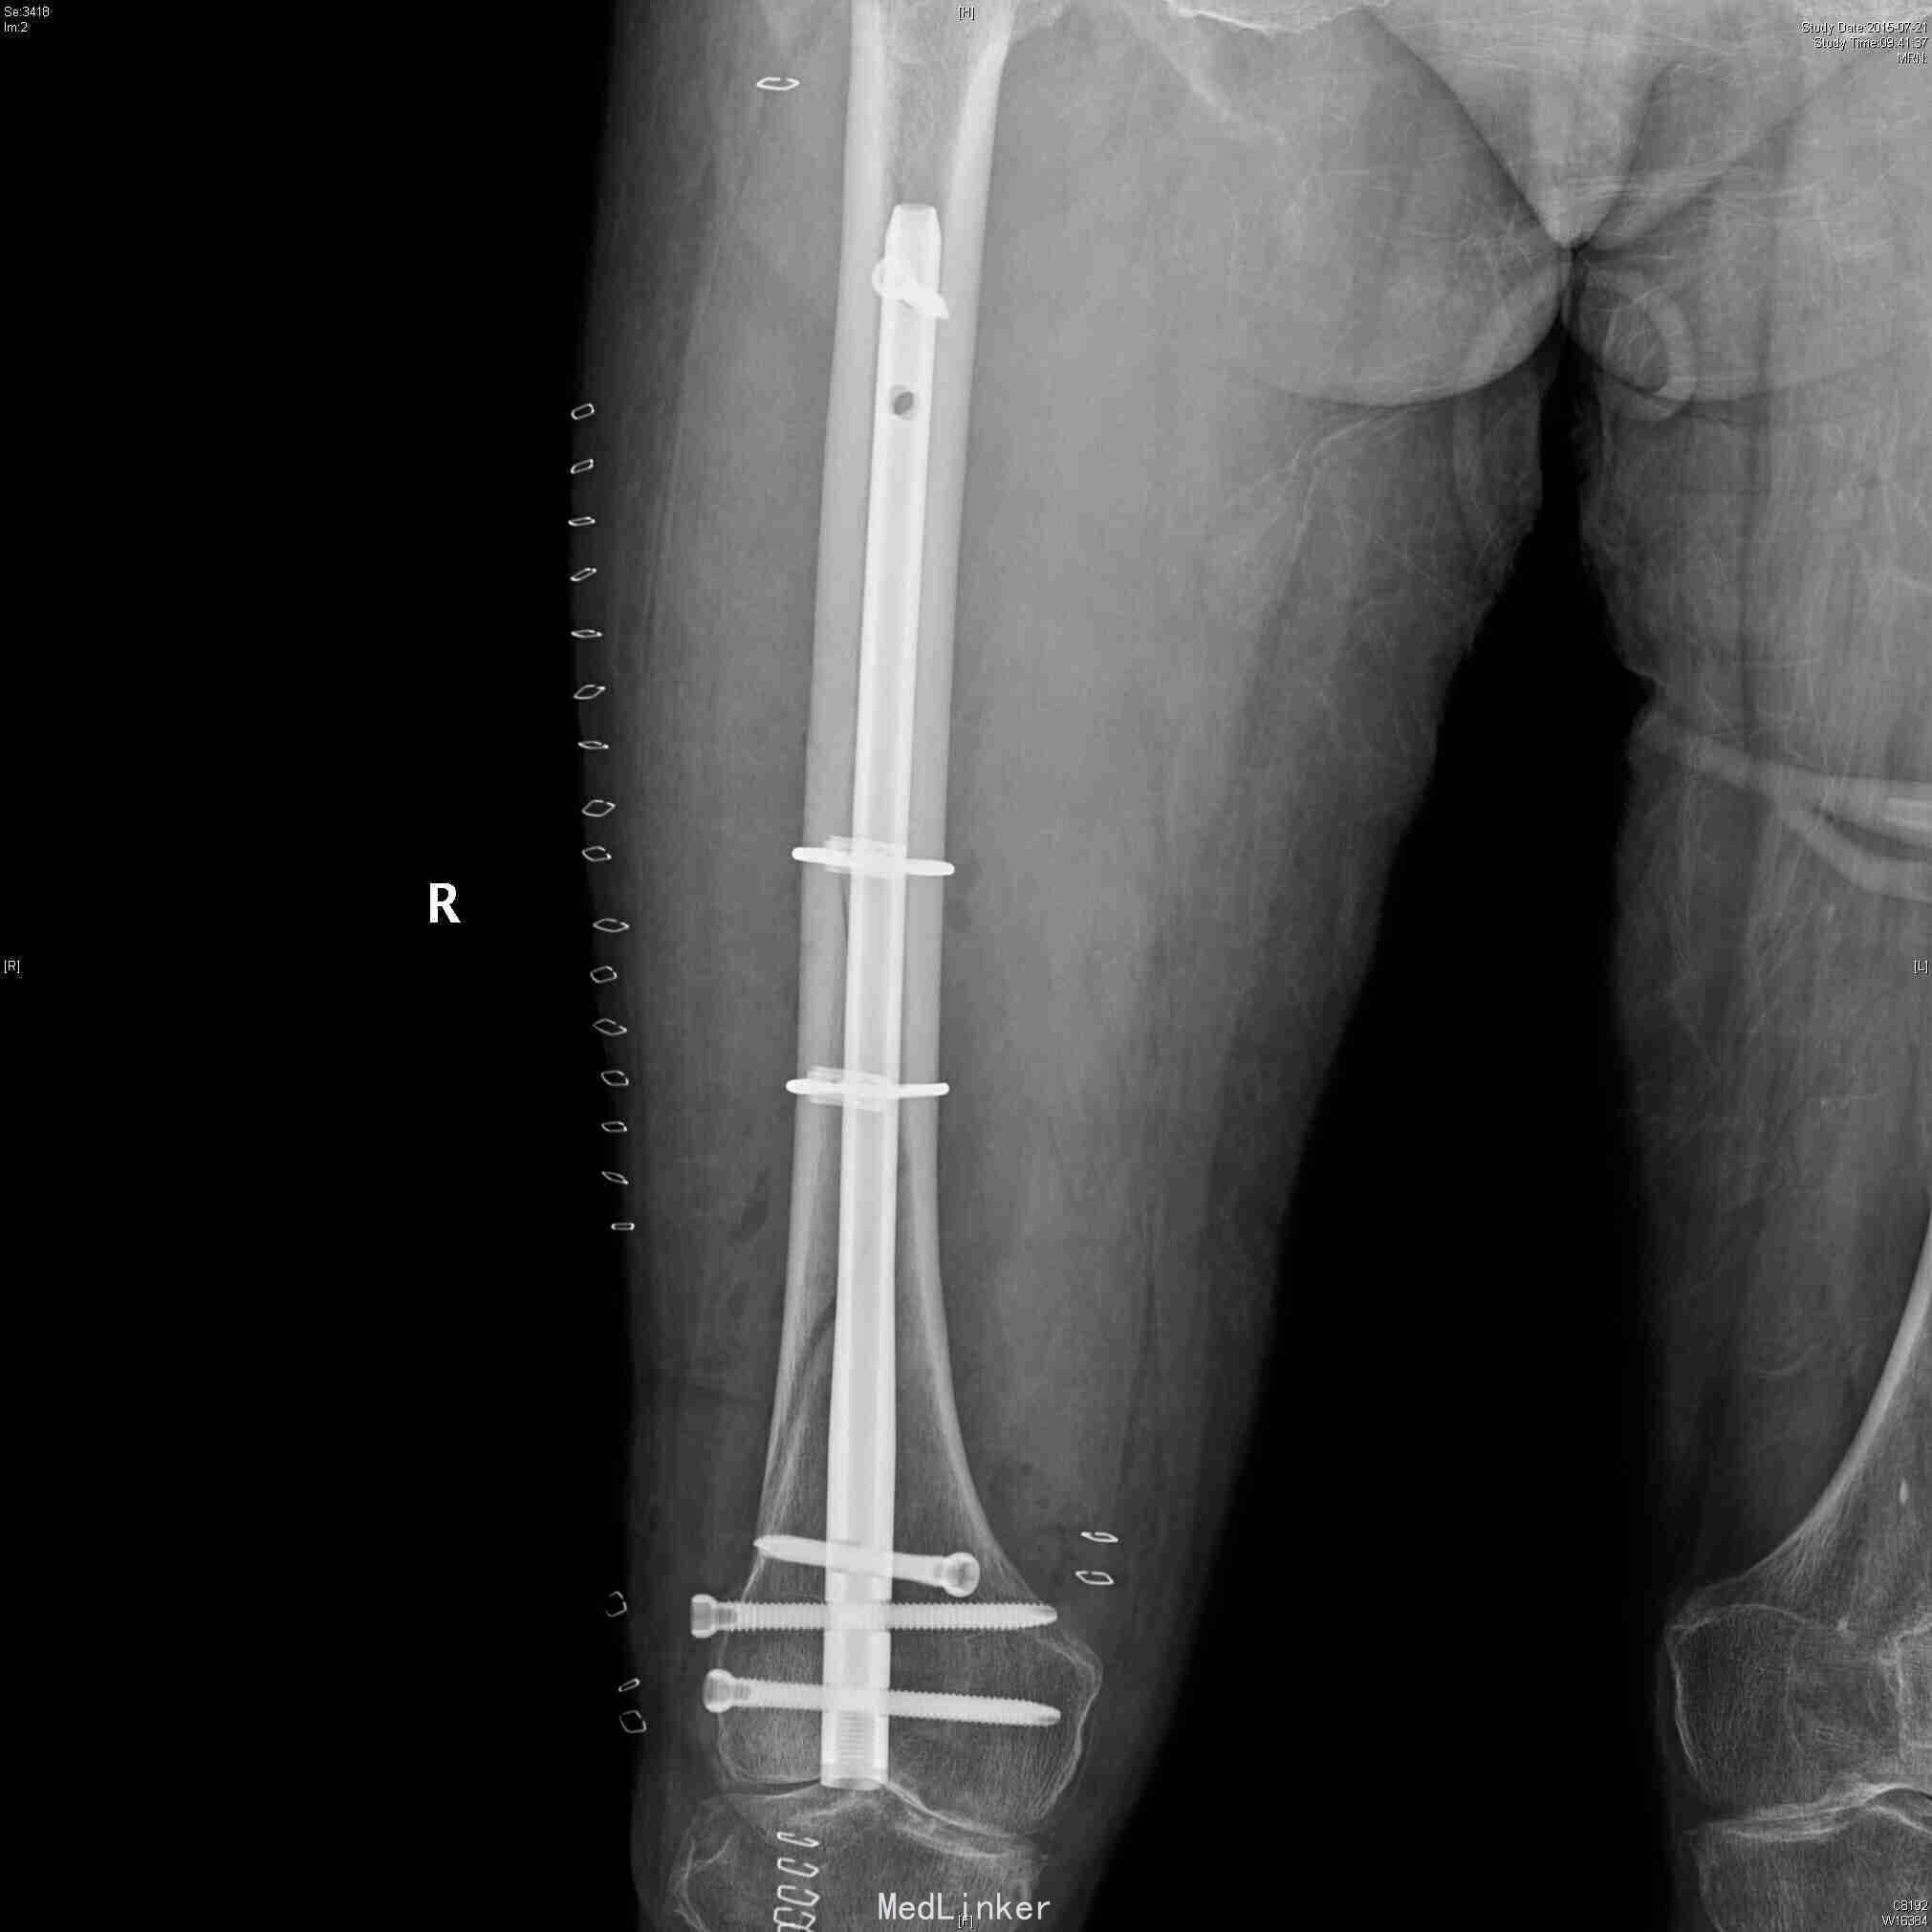 我院骨科完成首例股骨远端骨折闭合复位+倒打髓内钉内固定术 - 东胜区人民医院